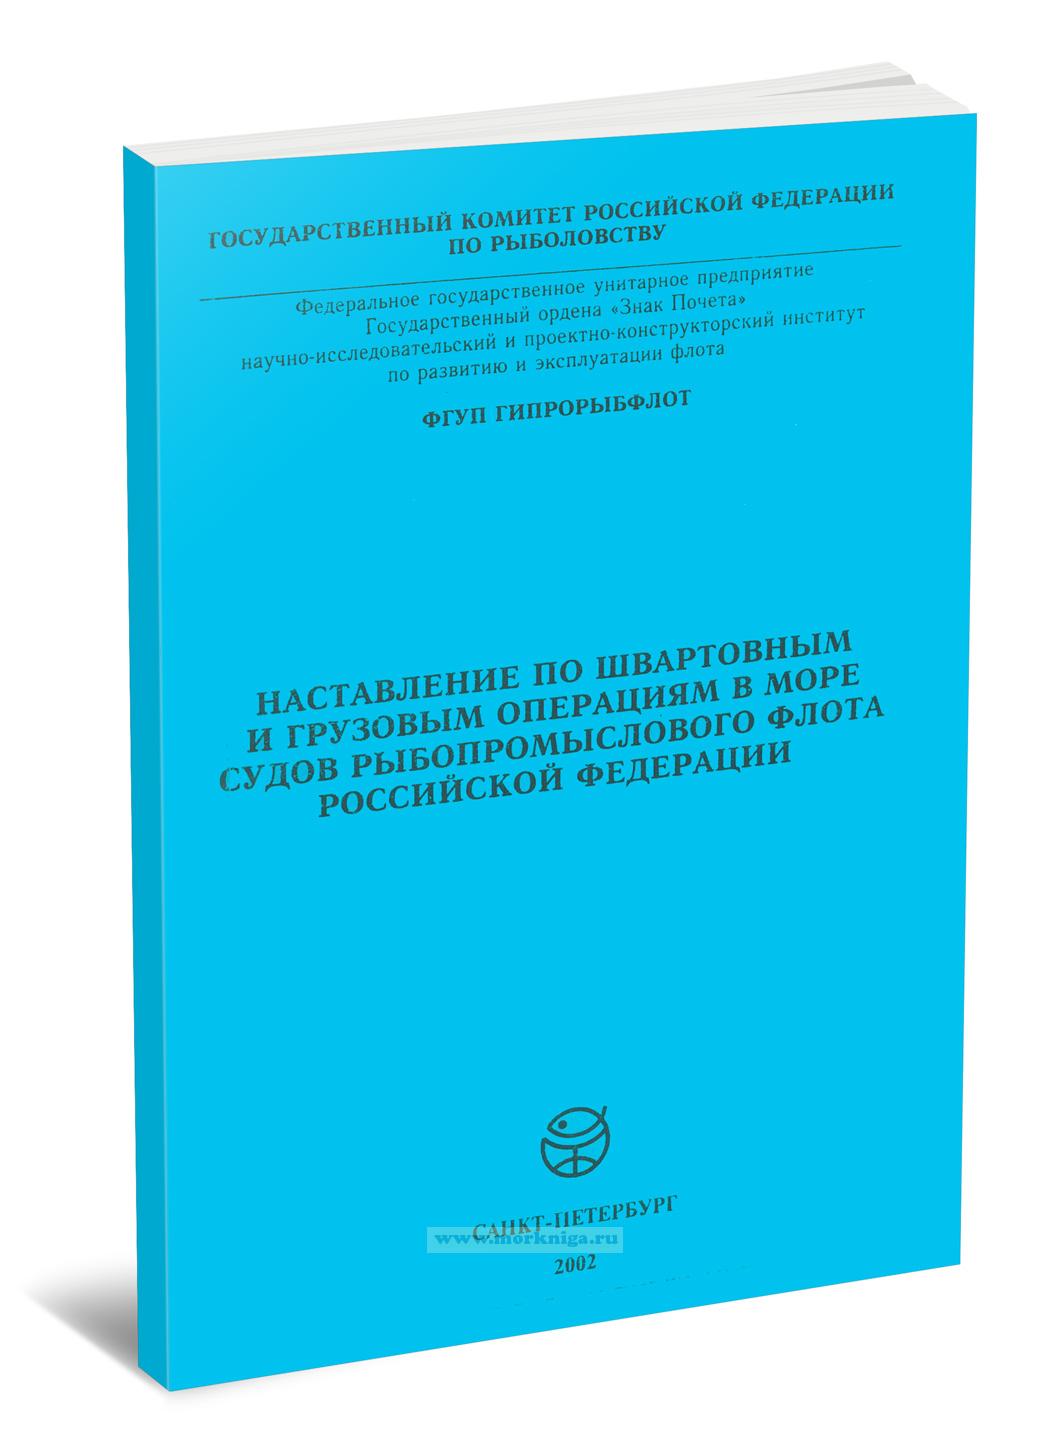 Наставление по швартовным и грузовым операциям в море судов рыбопромыслового флота Российской Федерации